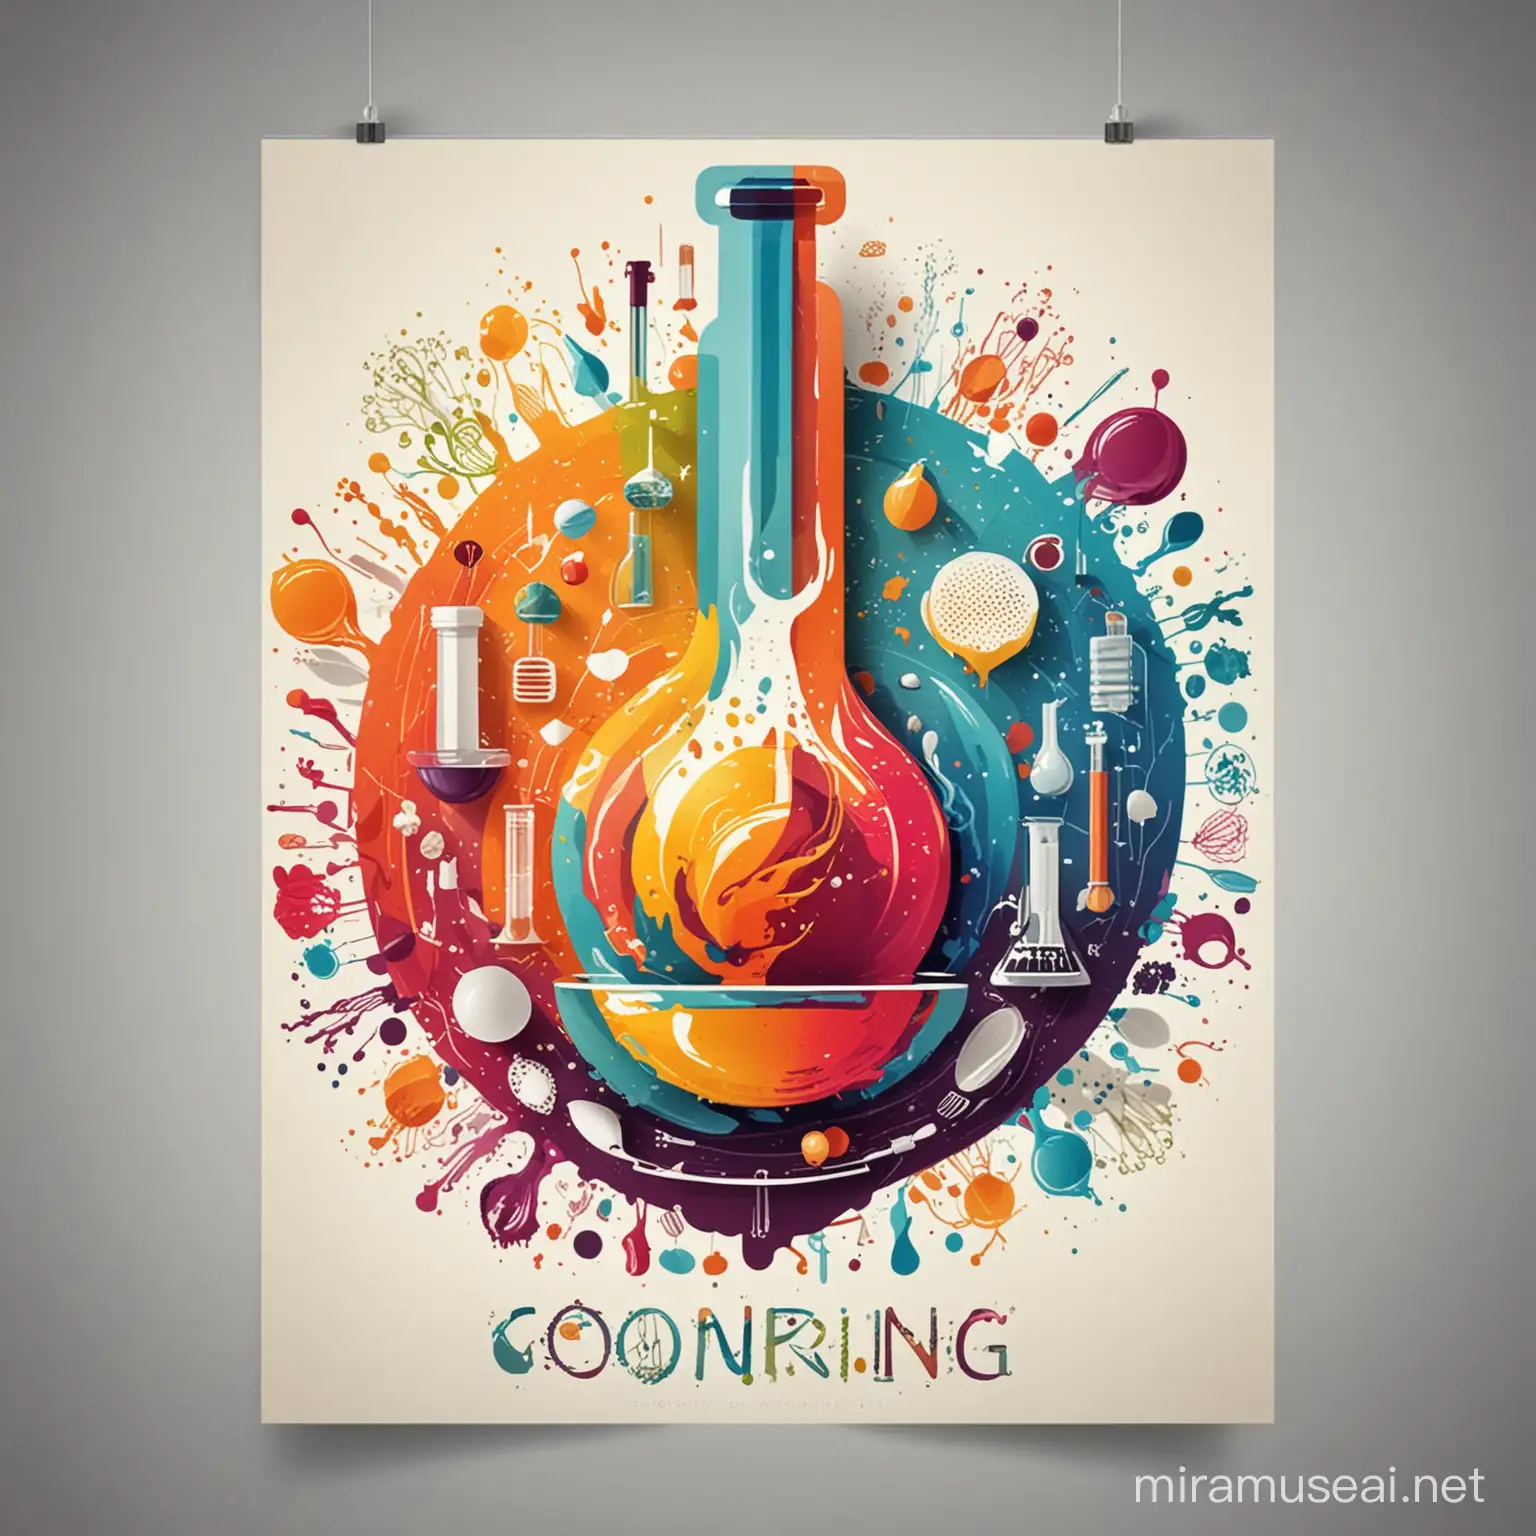 imagen abstracta con temática de cocina, laboratorio e innovación . diseño poster creativo y colorido